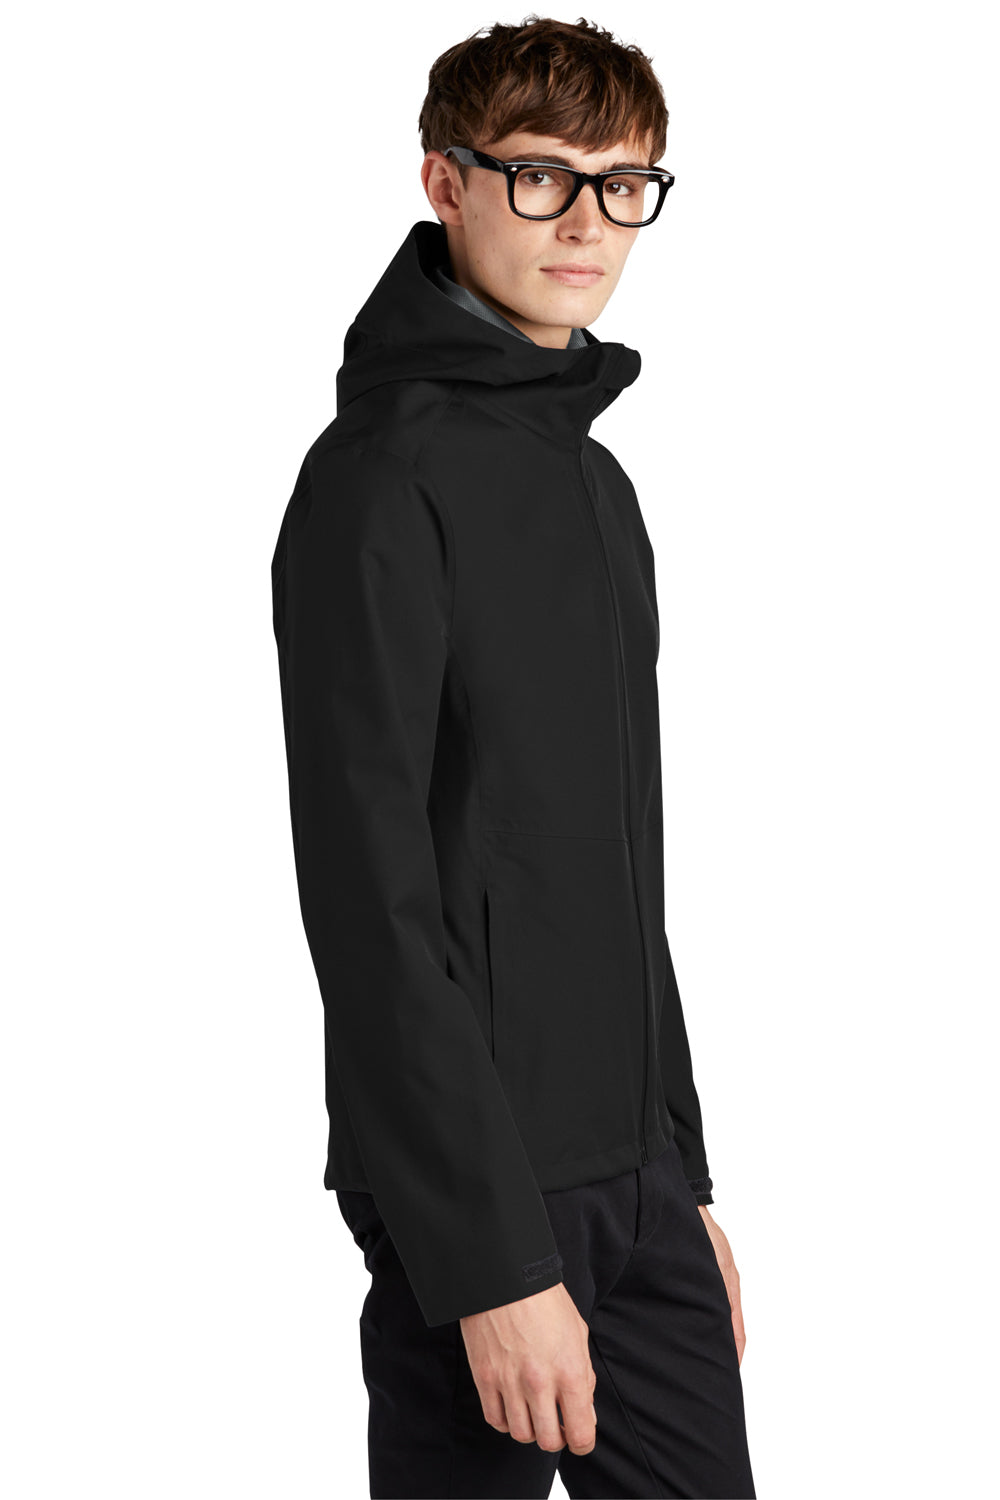 Mercer+Mettle MM7000 Waterproof Full Zip Hooded Rain Jacket Deep Black Side